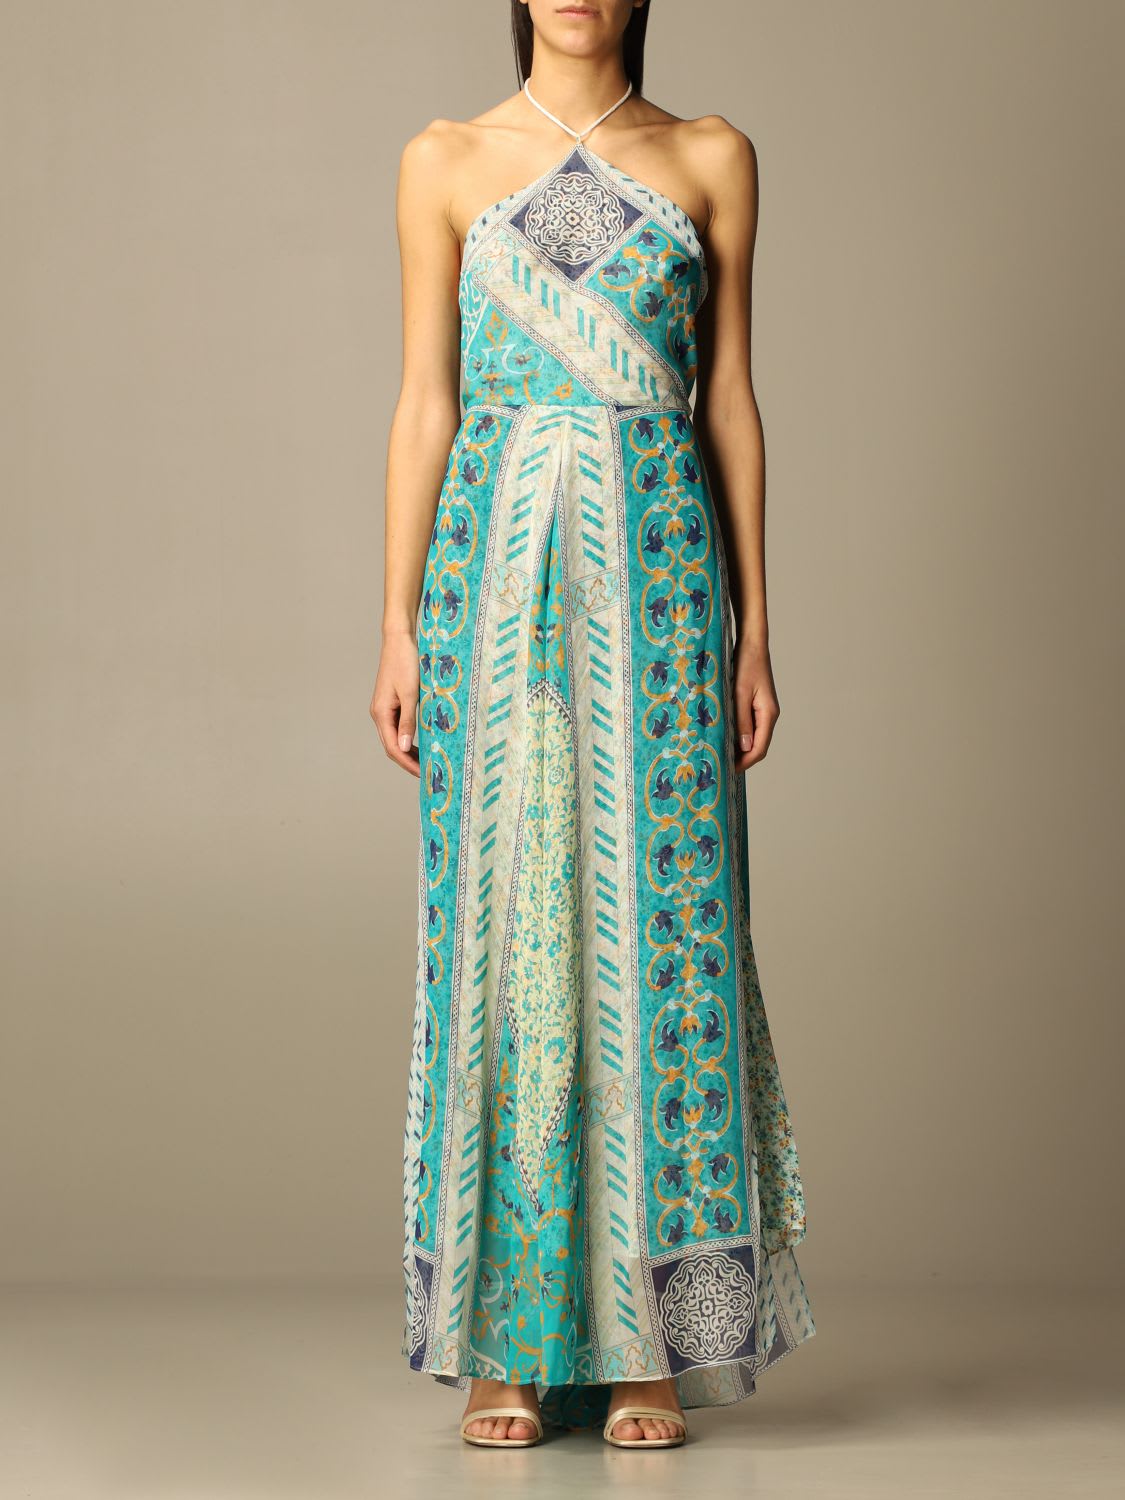 Etro Dress Long Etro Dress In Patterned Silk